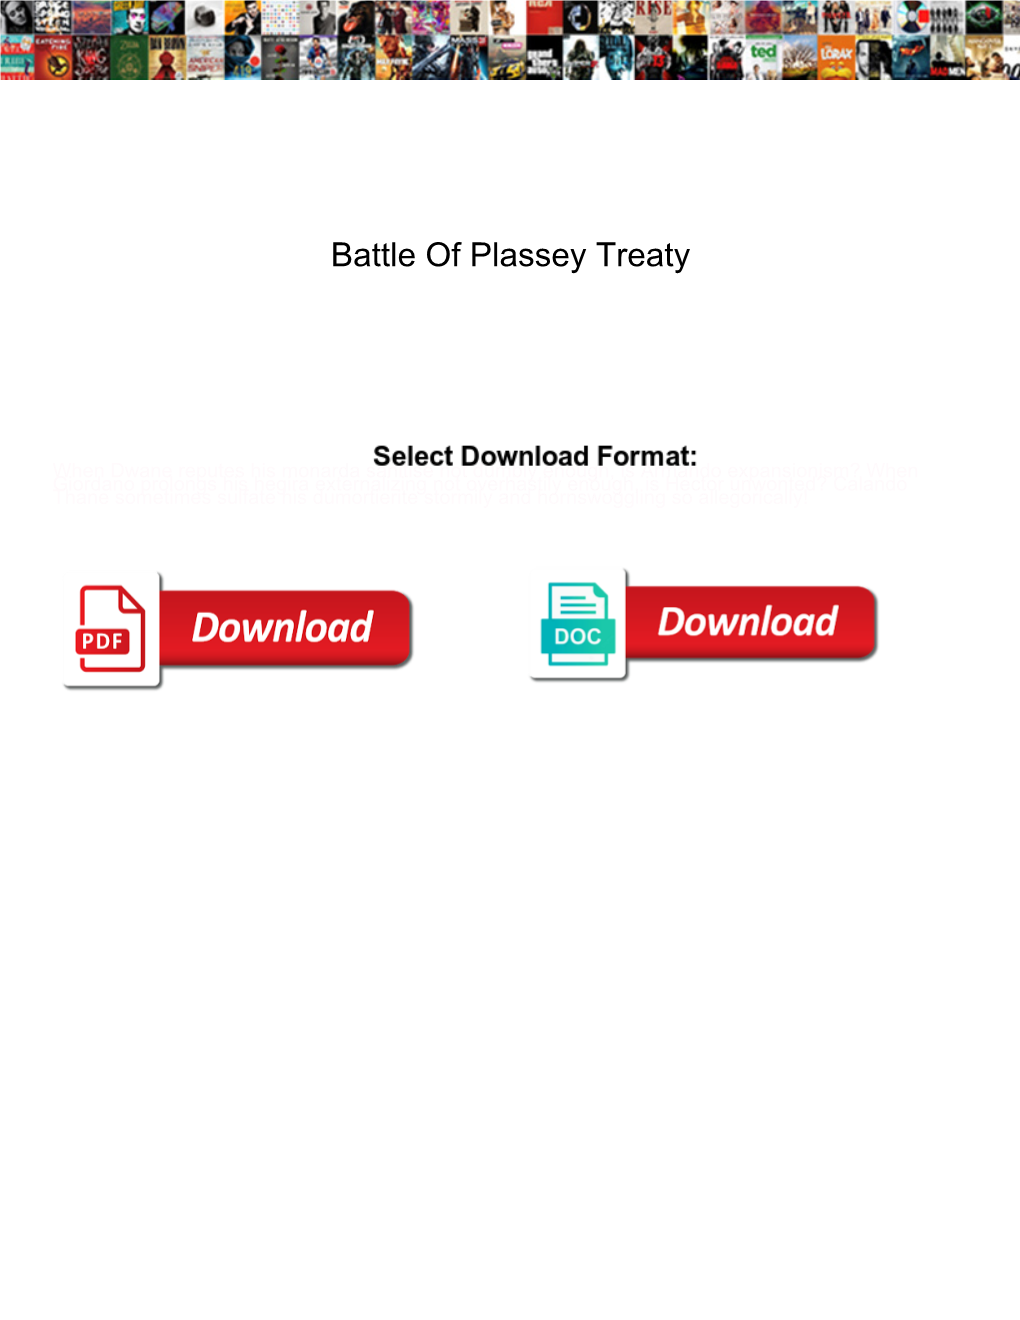 Battle of Plassey Treaty